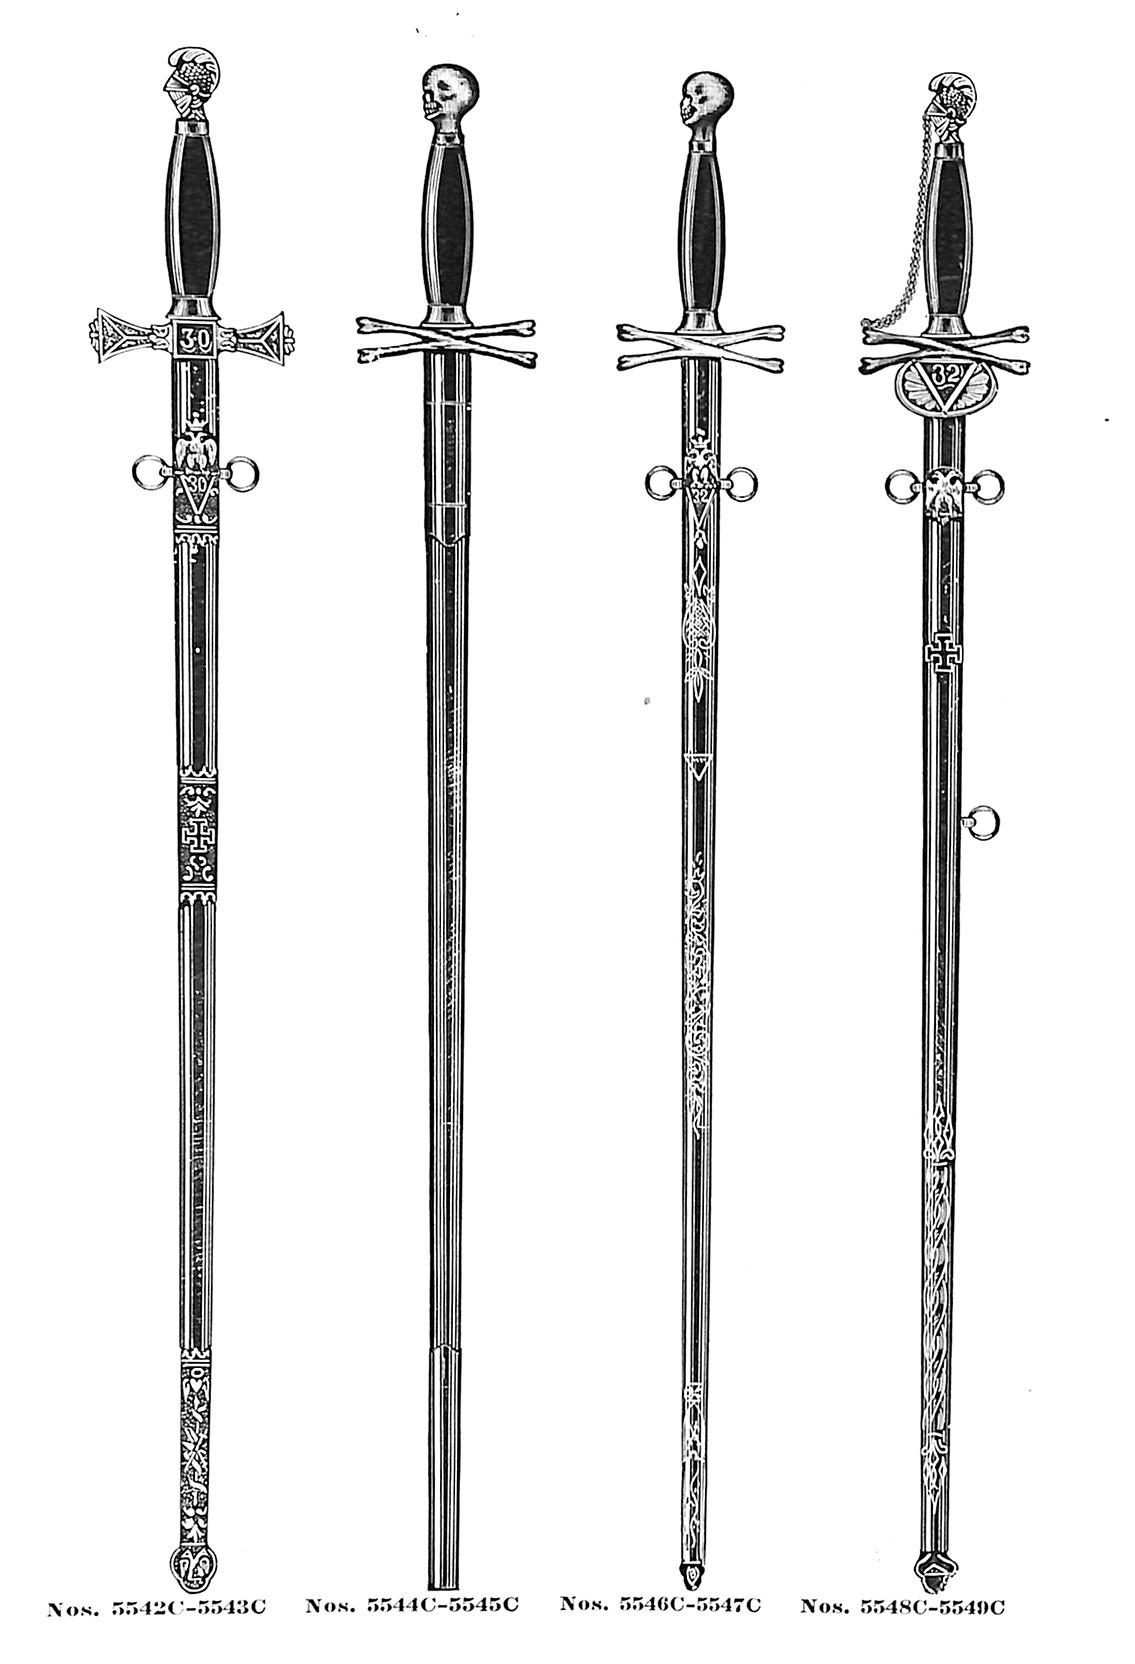 Consistory swords no. 5542C-5549C